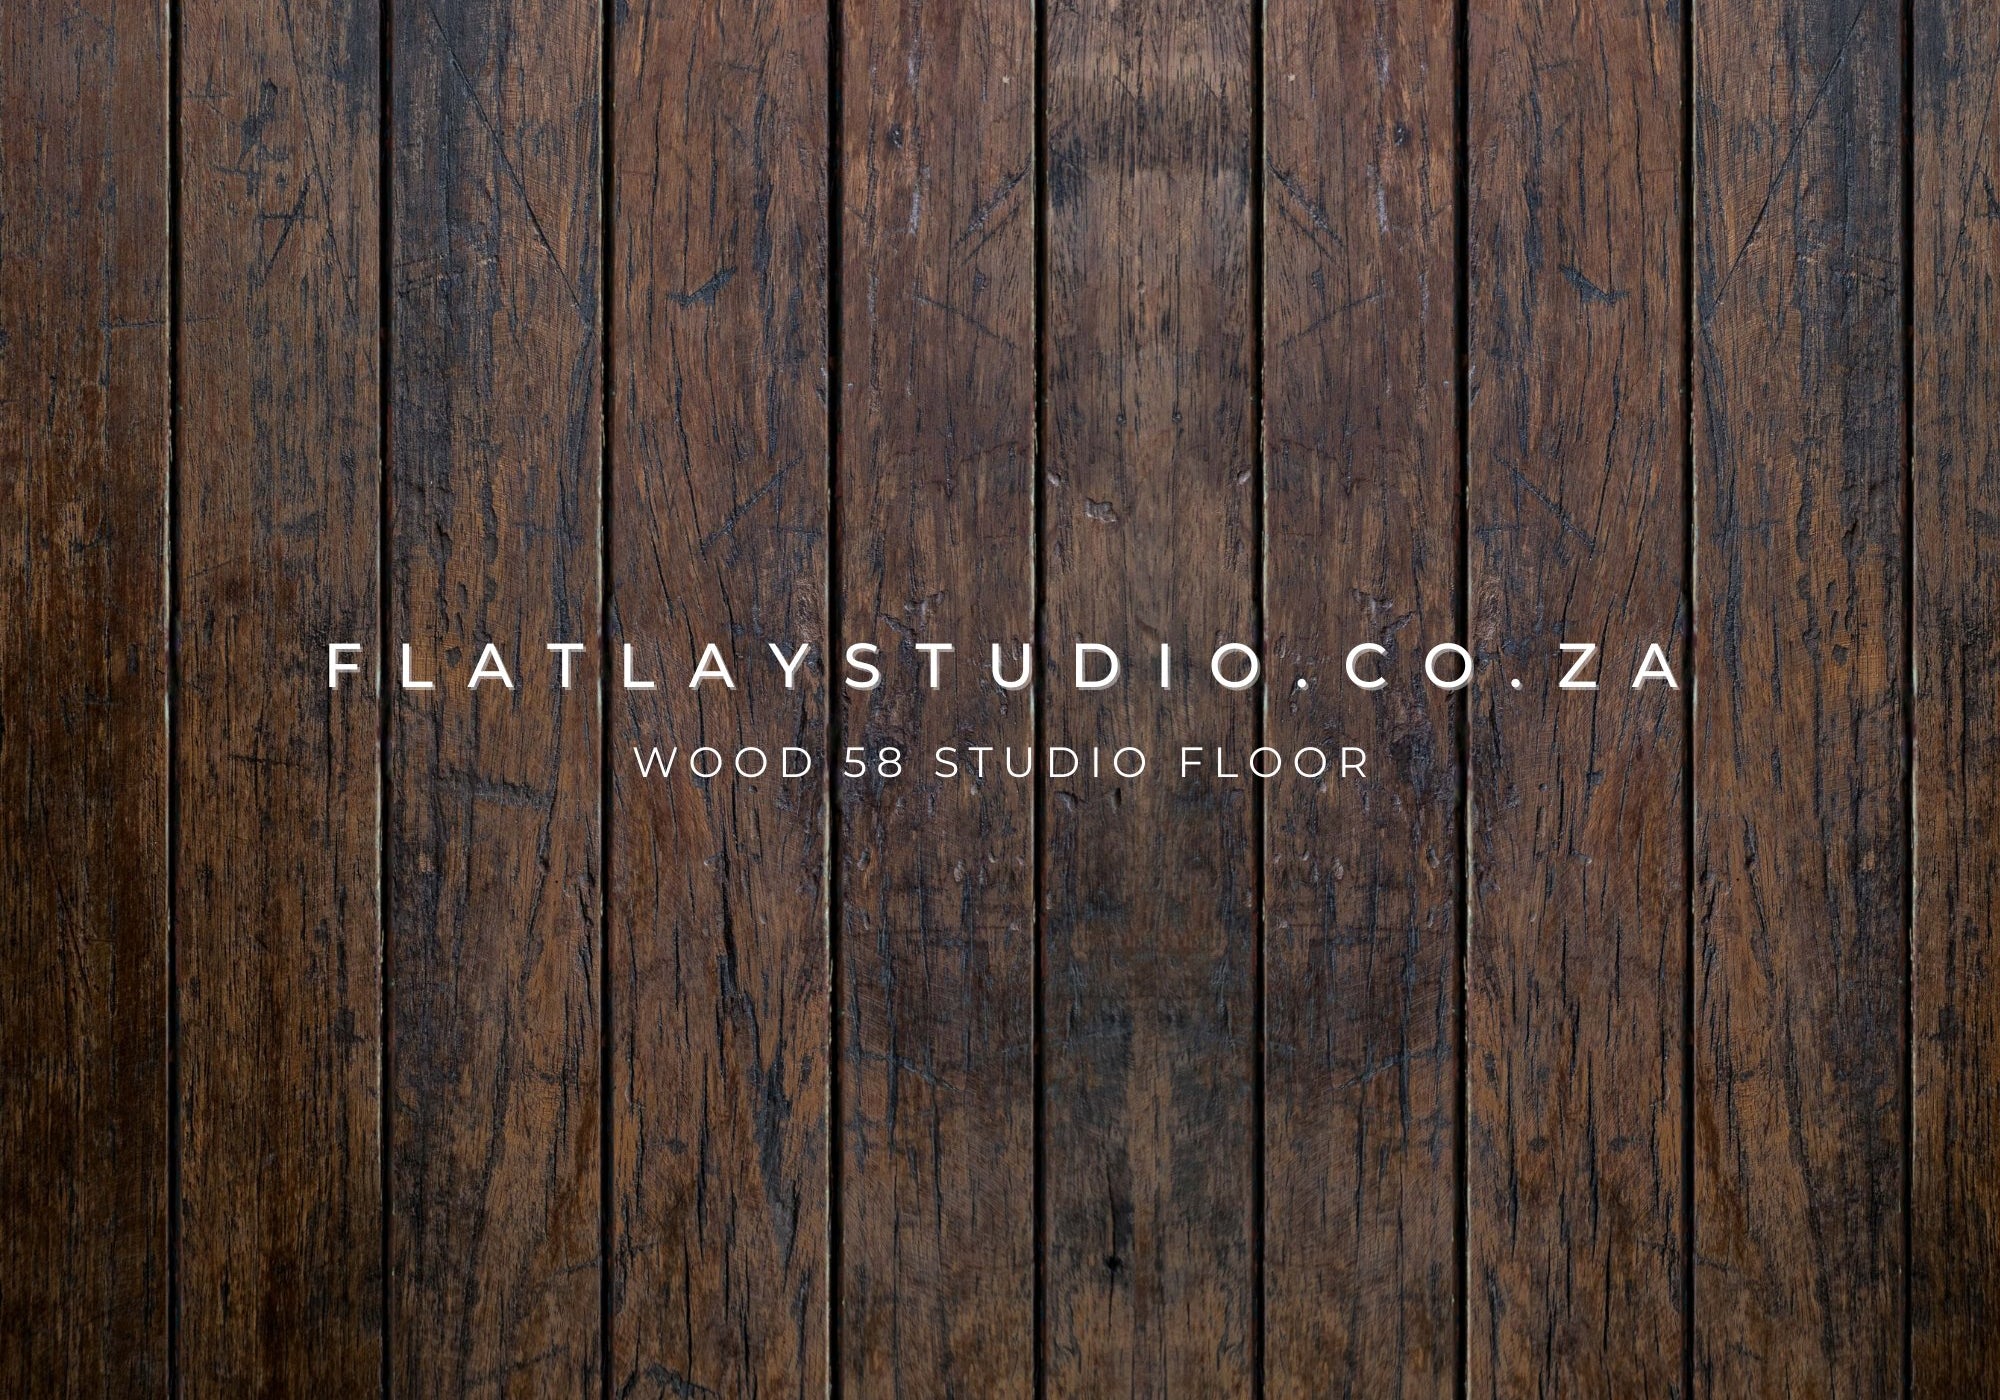 Wood 58 Studio Floor - FlatlayStudio